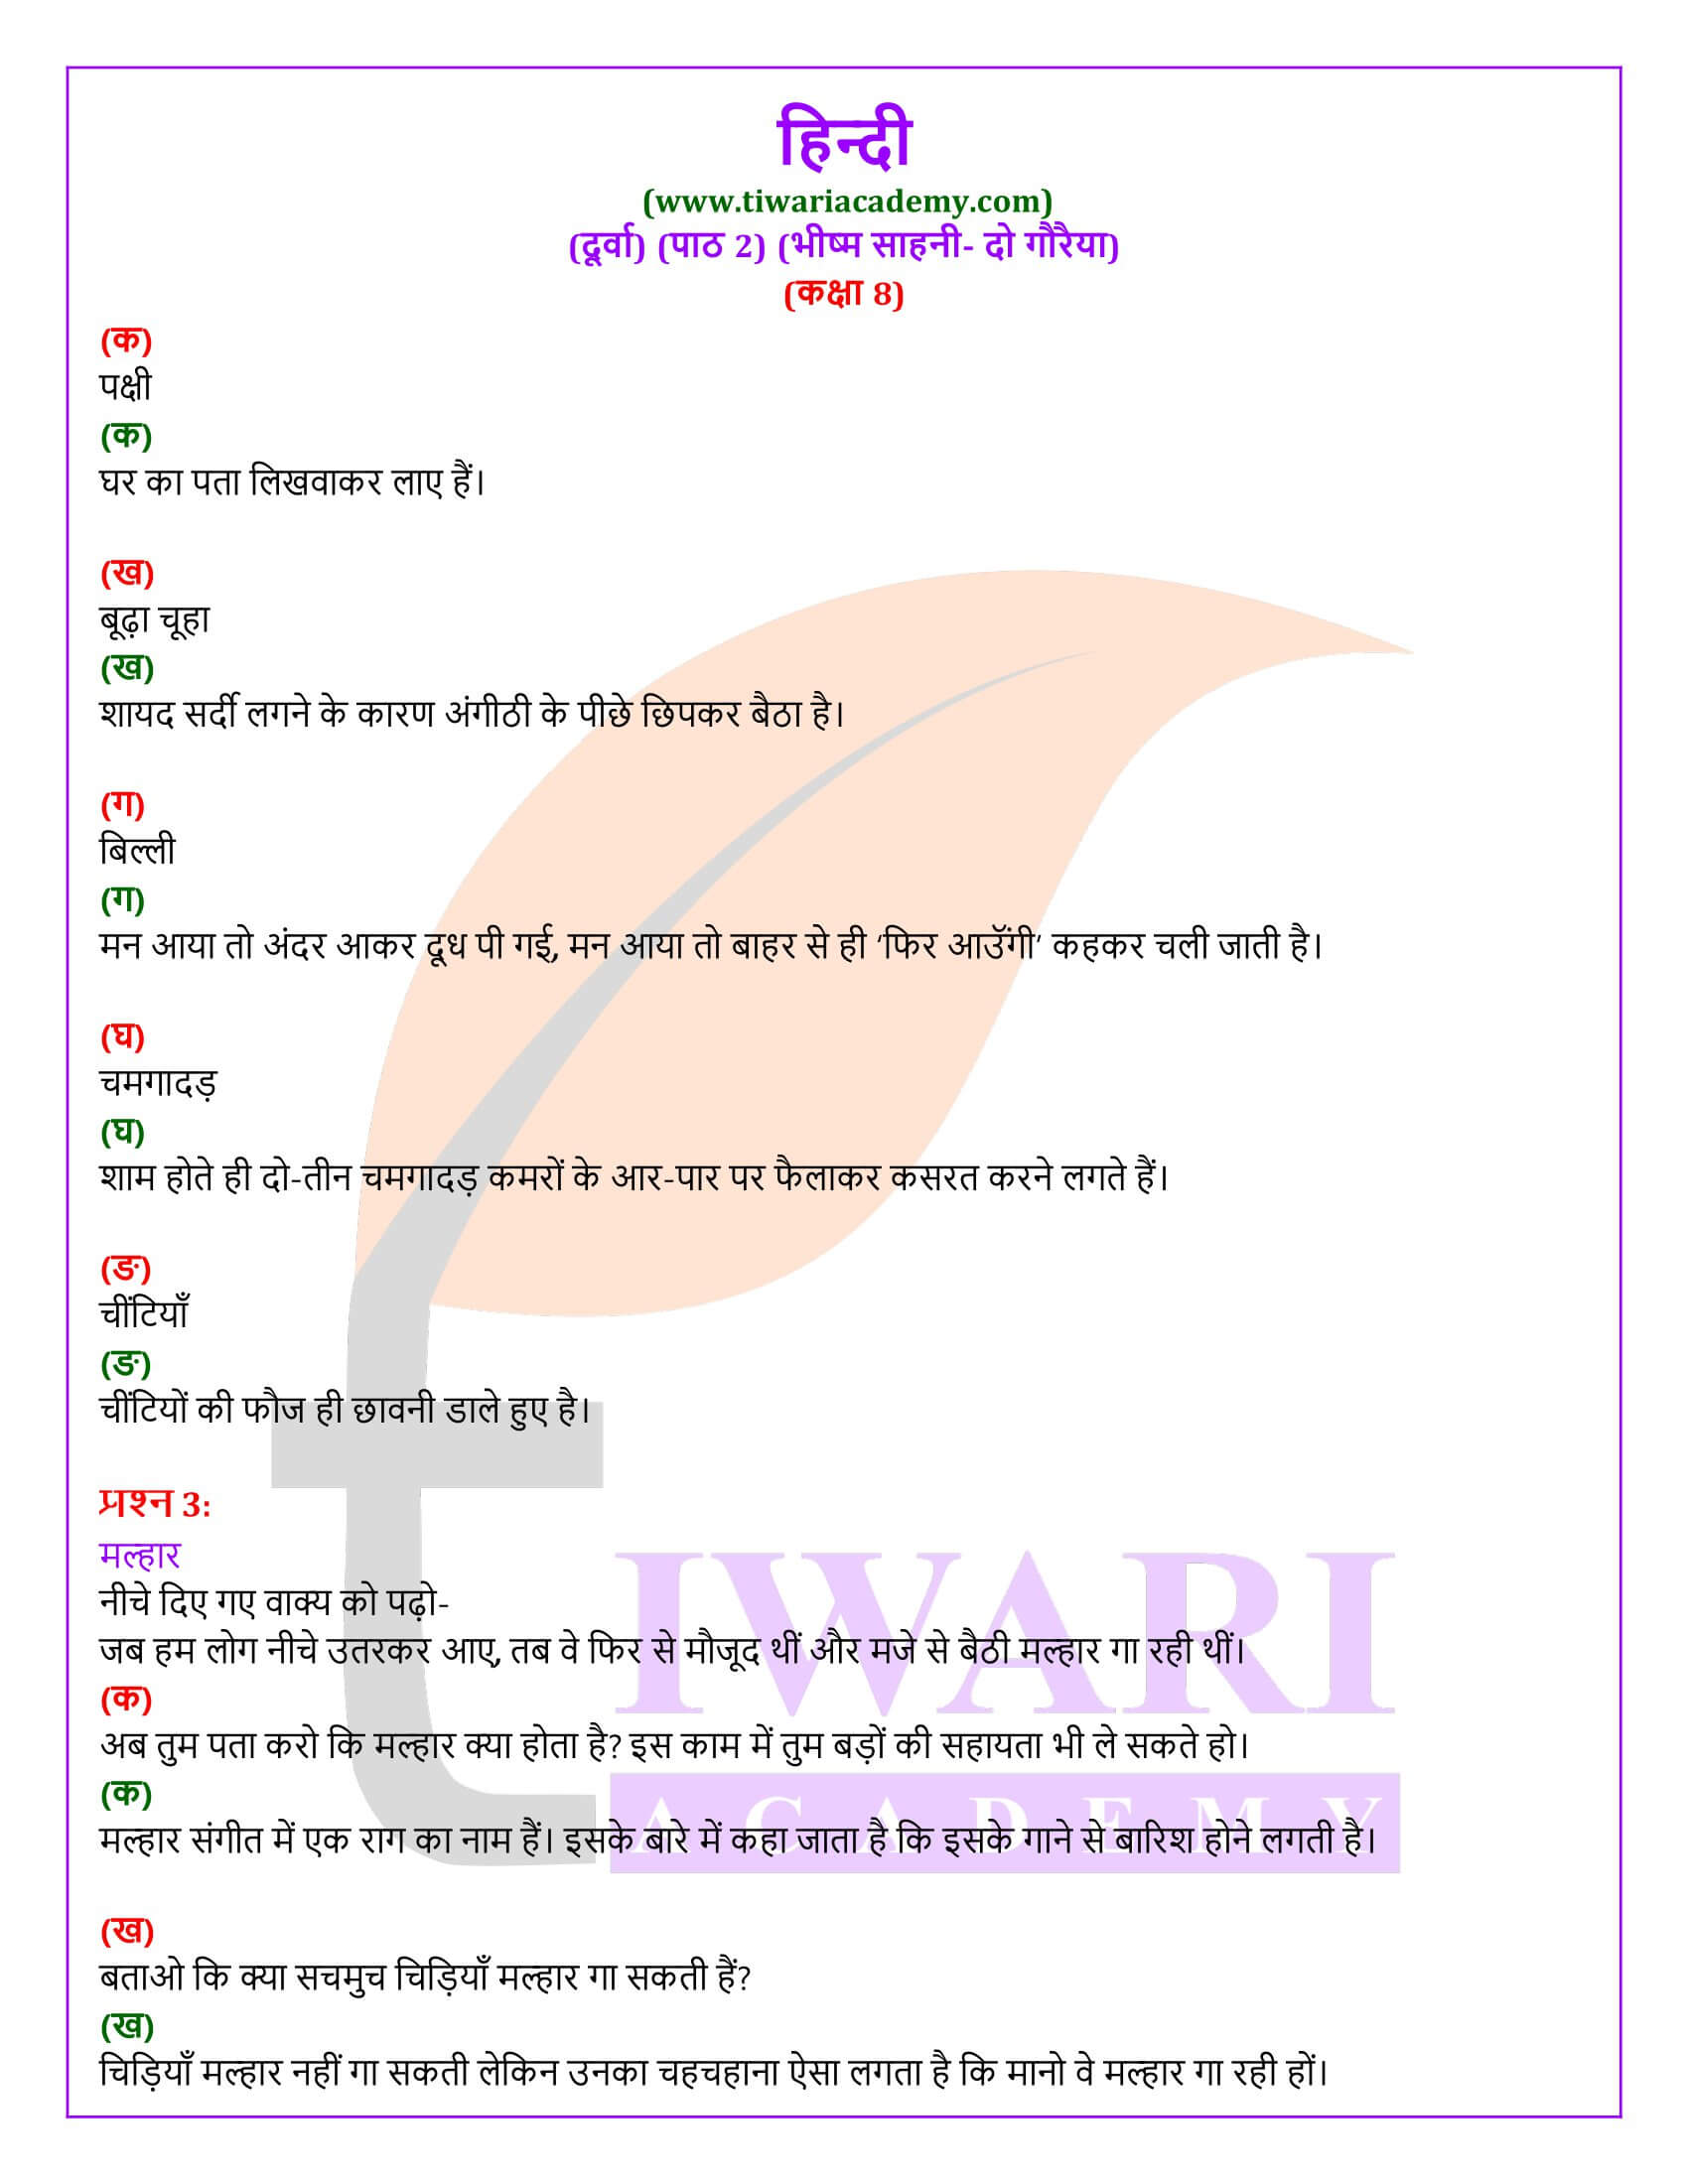 कक्षा 8 हिंदी दूर्वा अध्याय 2 दो गौरैया